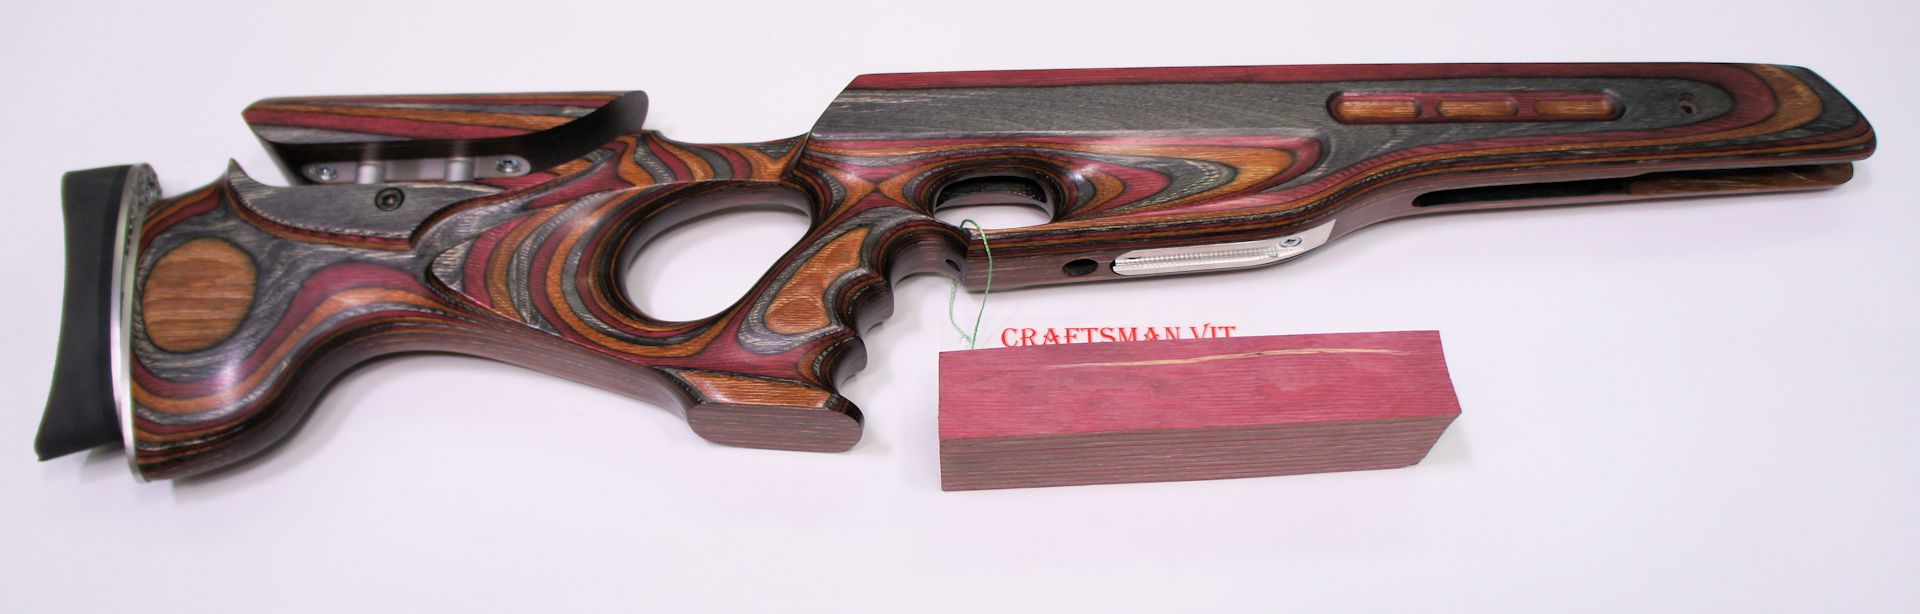 Als Zugabe ist beim Craftsman VIT Custom Schaft ein rohes Holzteil in der passenden Farbe dabei. Daraus könnte man einen Hamster fertigen.